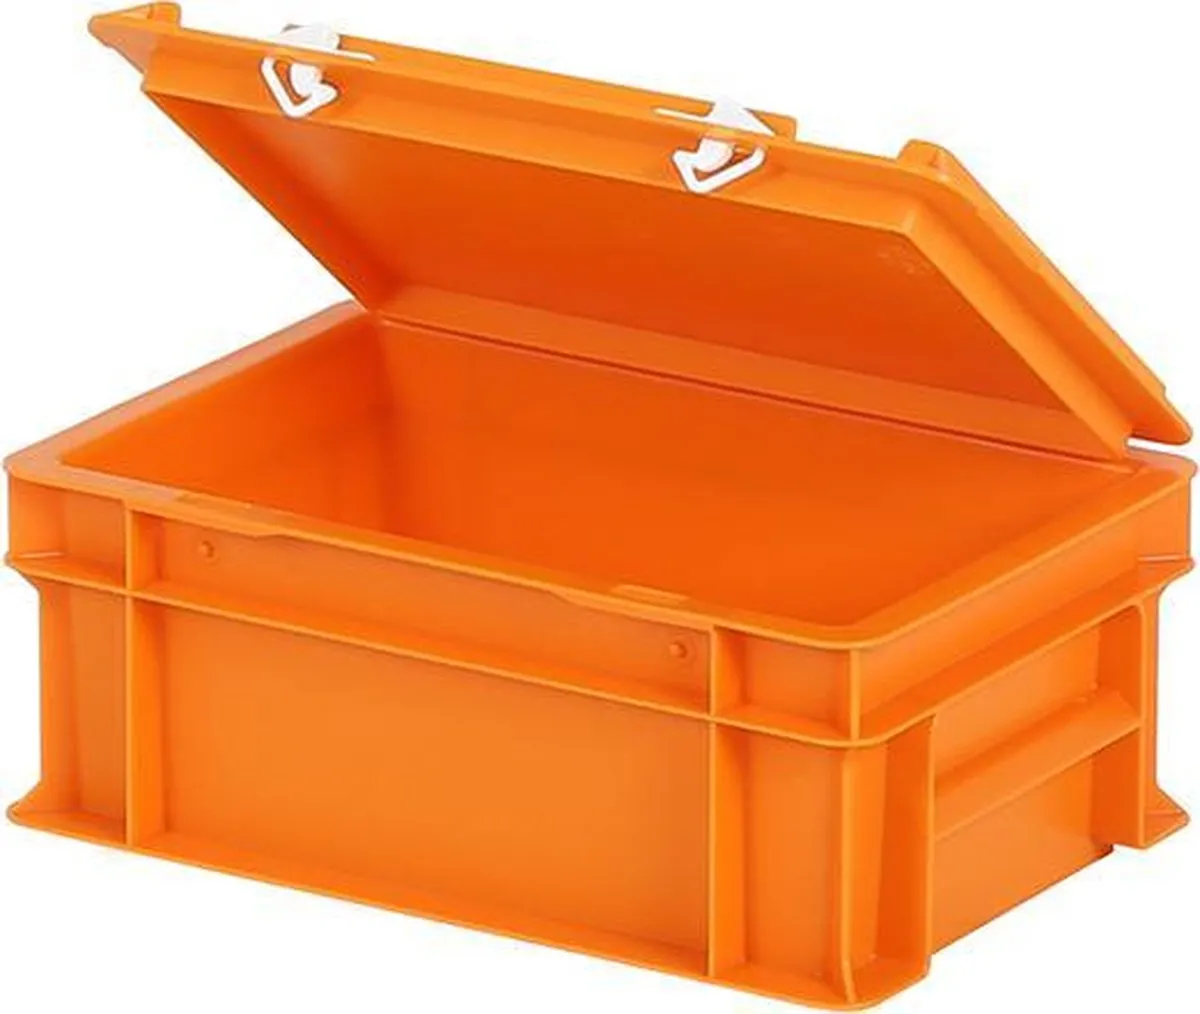 Orange lidded bins